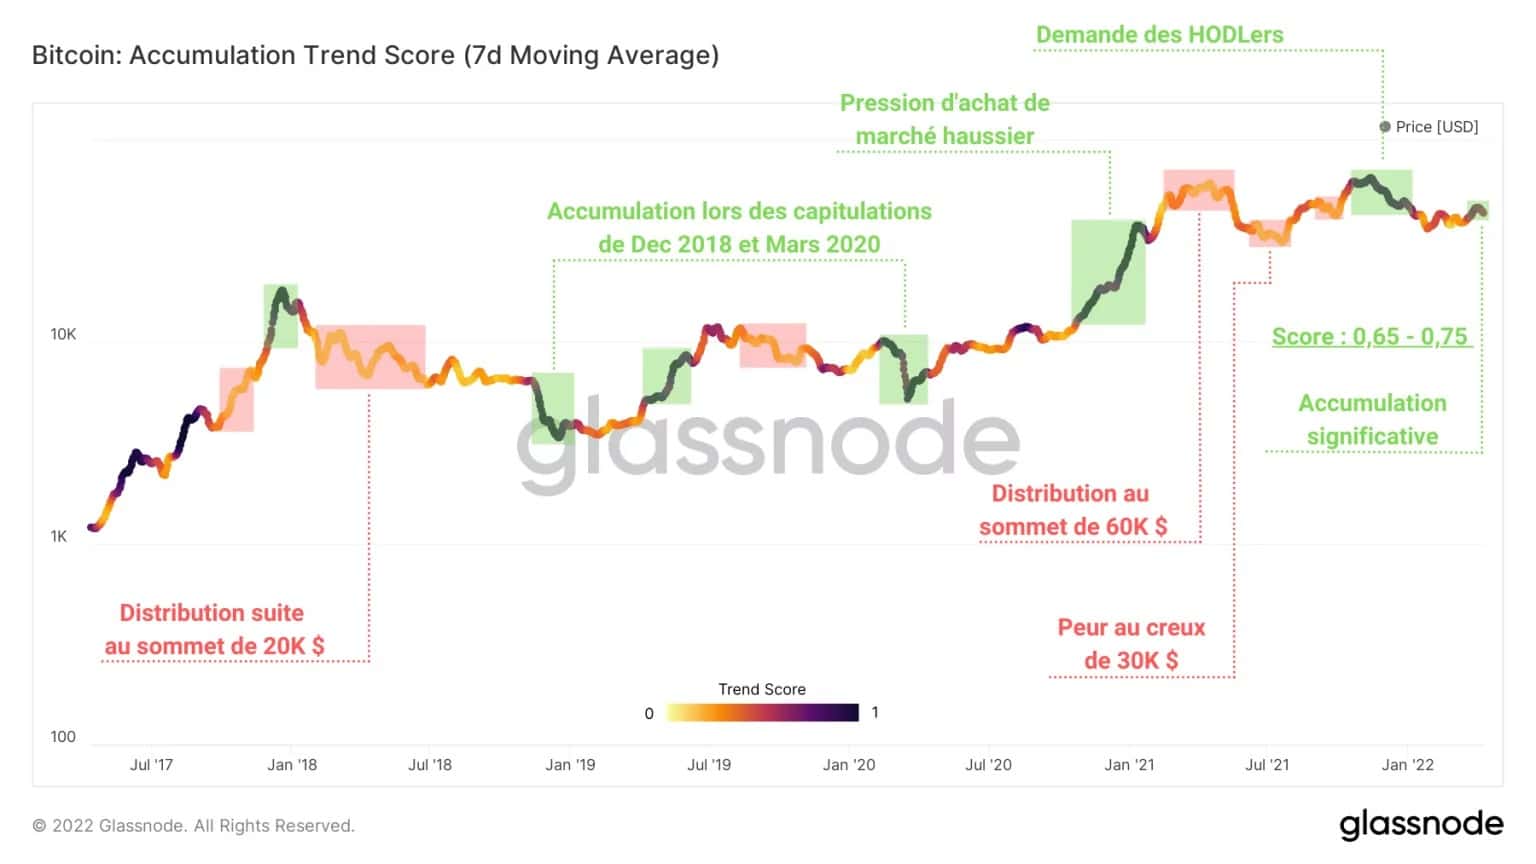 Abbildung 2: BTC Accumulation Trend Score